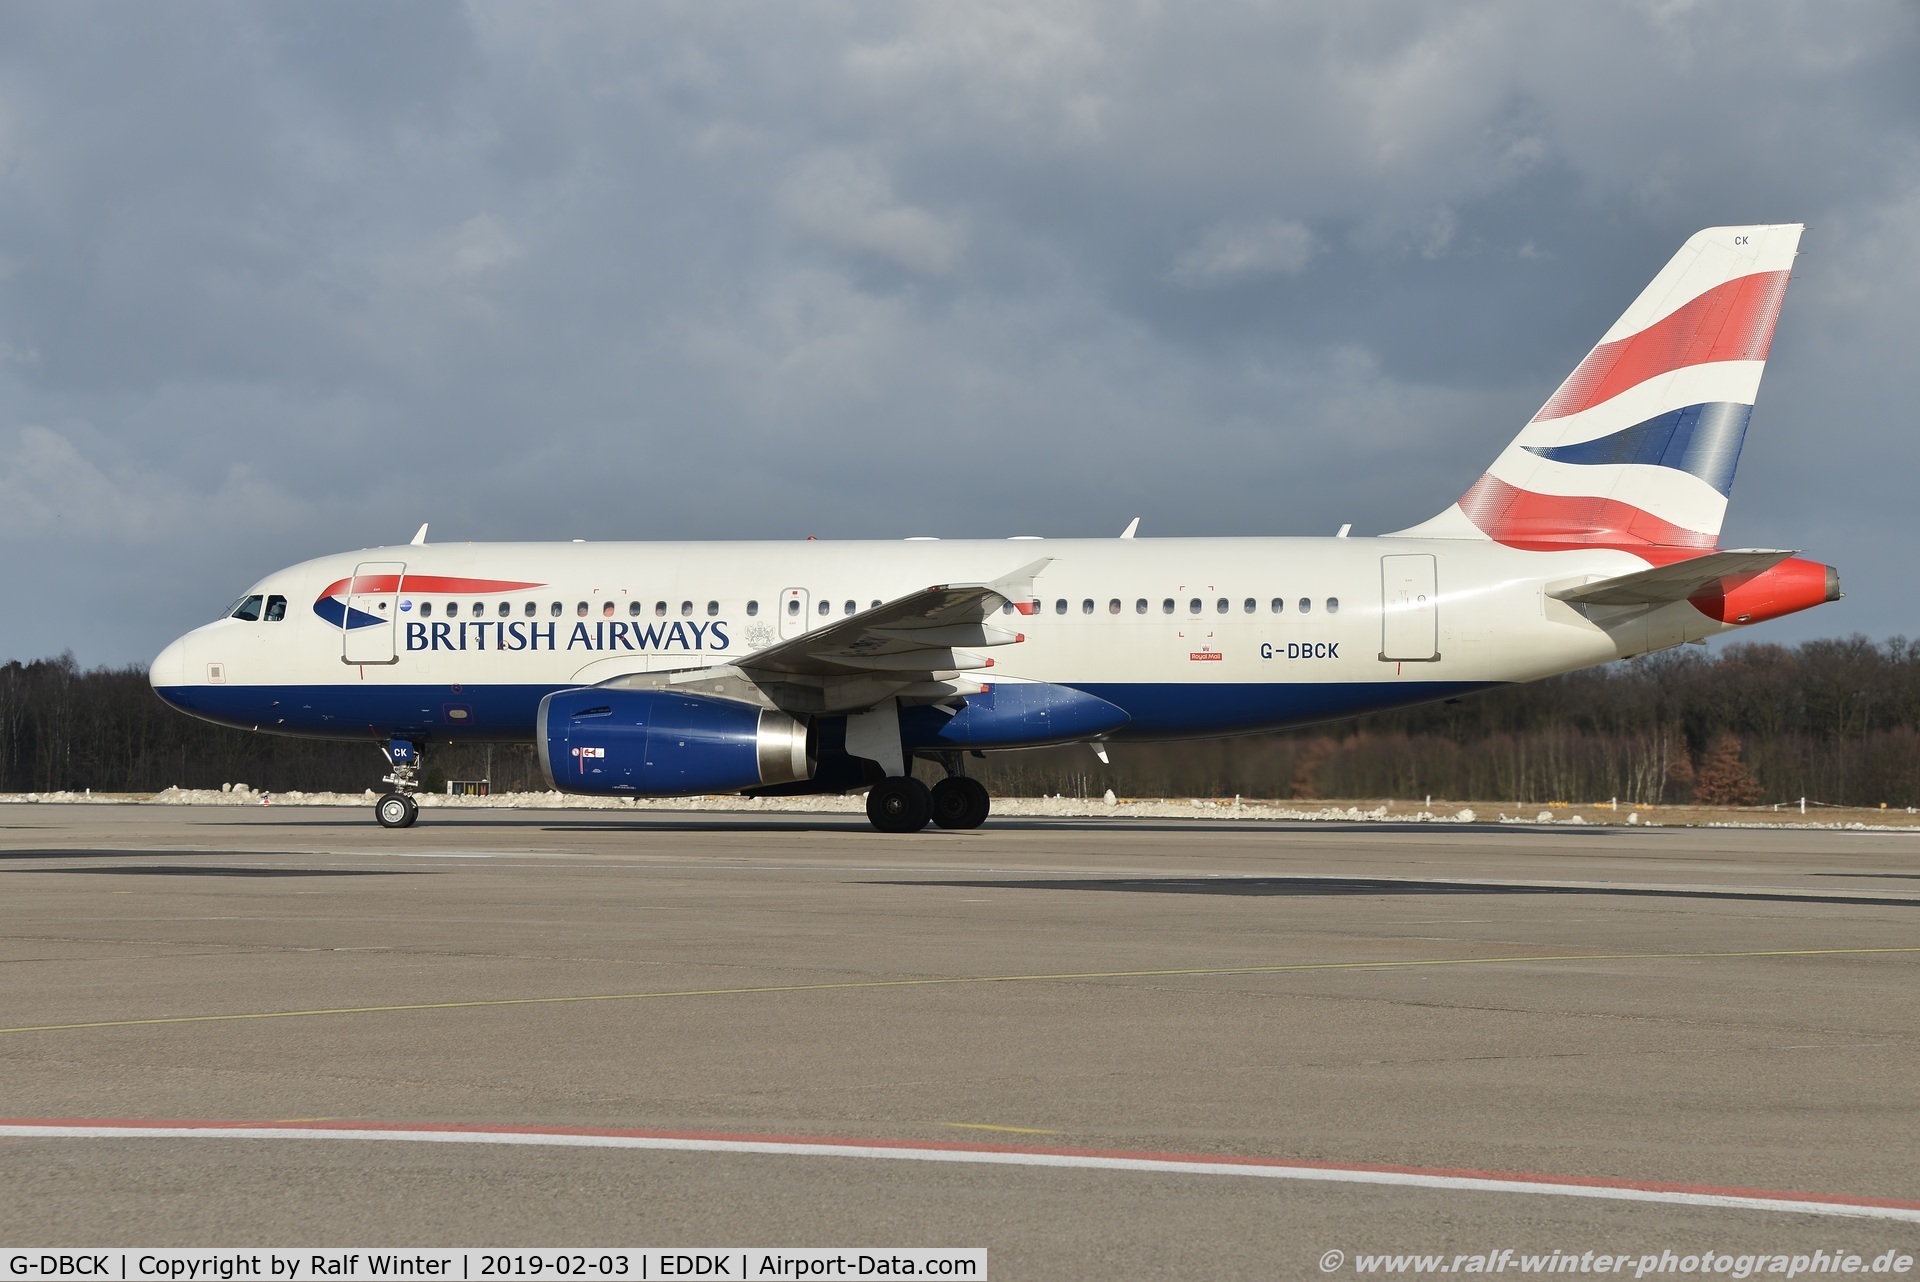 G-DBCK, 2007 Airbus A319-131 C/N 3049, Airbus A319-131 - BA BAW British Airways - 3049 - G-DBCK - 03.02.2019 - CGN